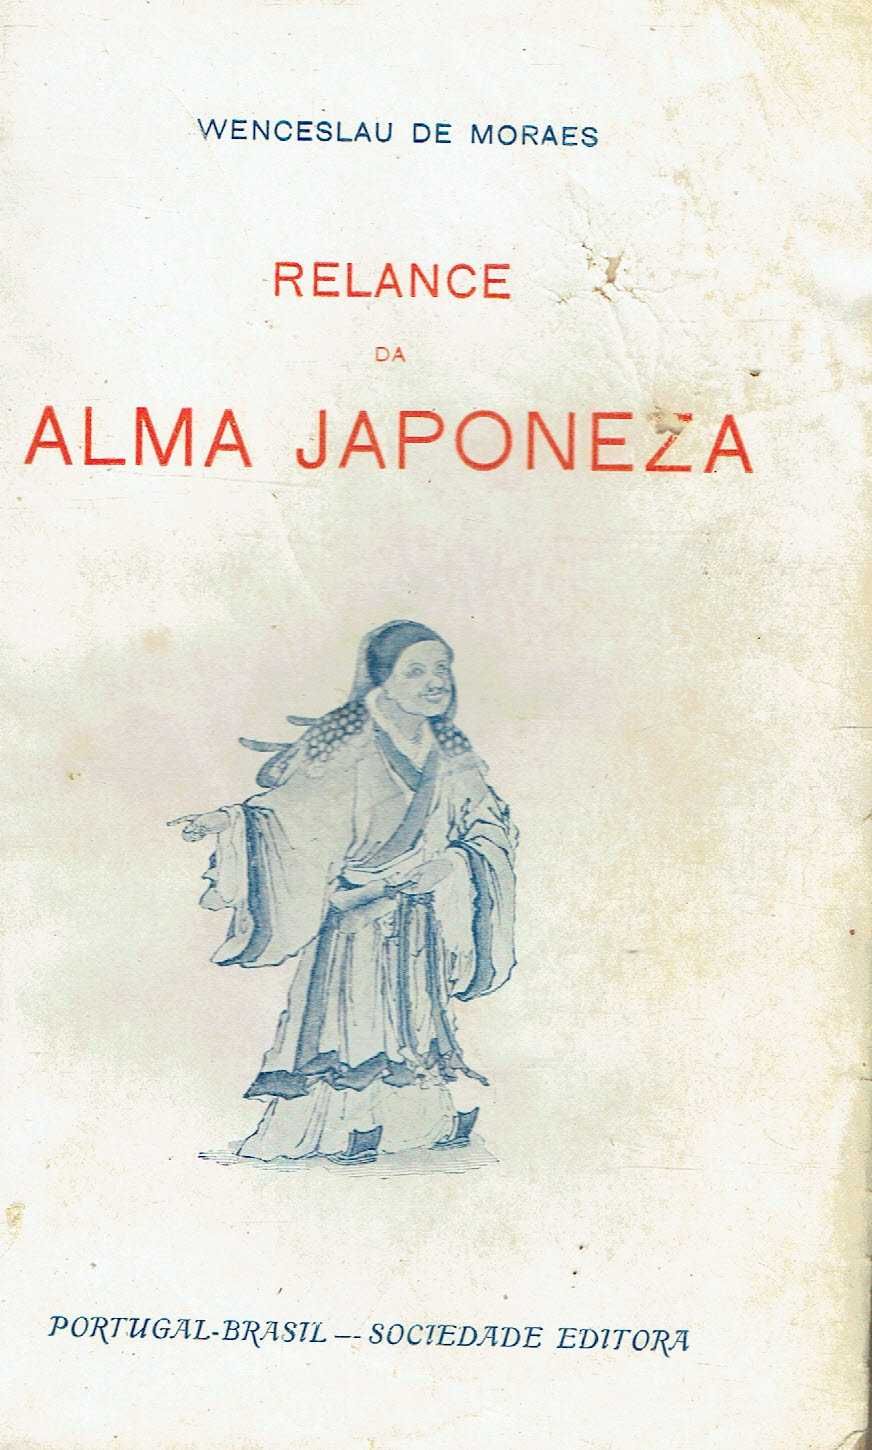 7912
	
Relance da alma japoneza  - 1ª edição
de Wenceslau de Moraes.